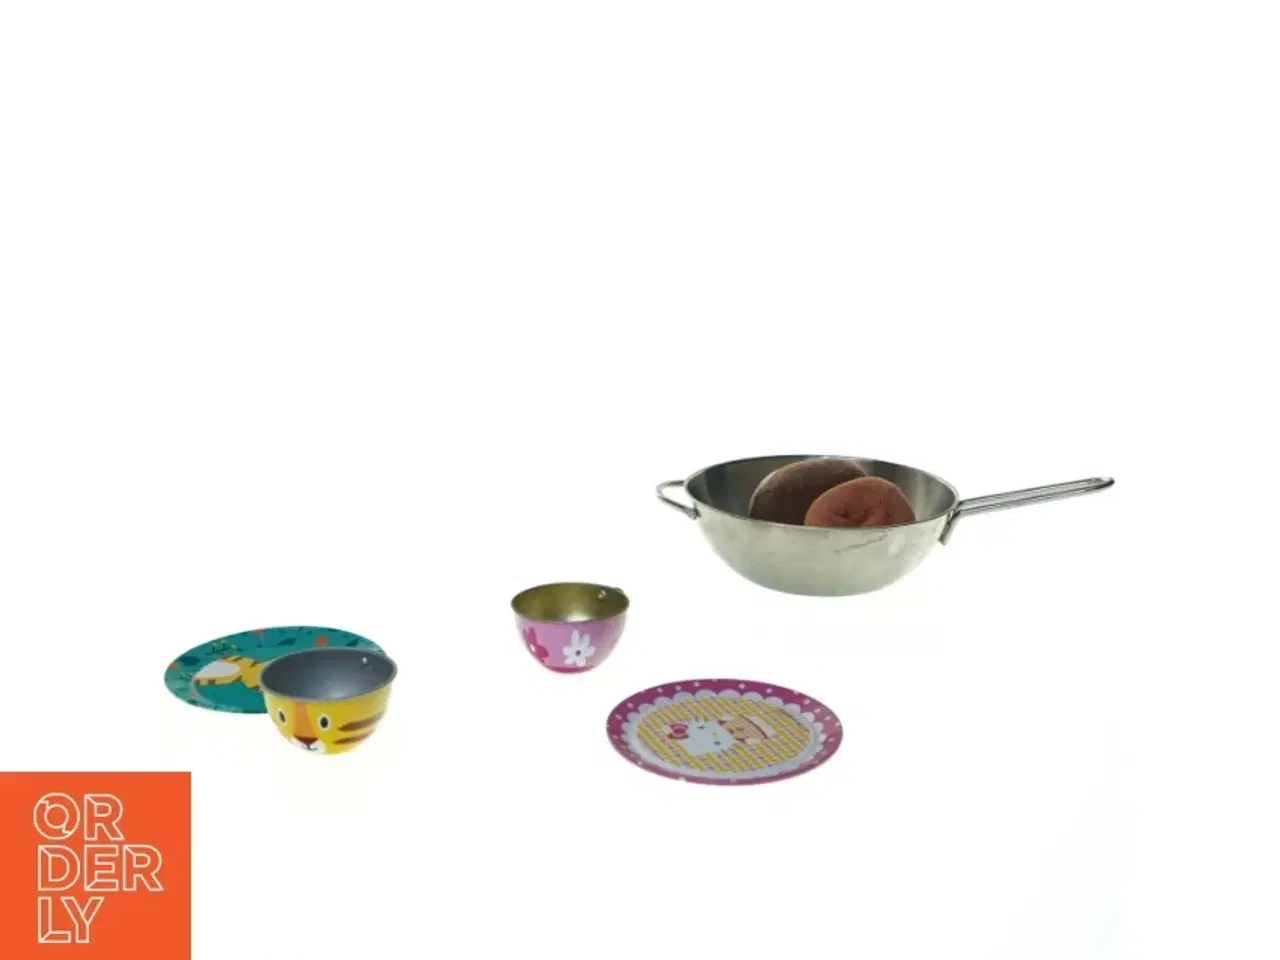 Billede 3 - Forskellige køkkengrej legetøj (str. 13 x 5 cm)